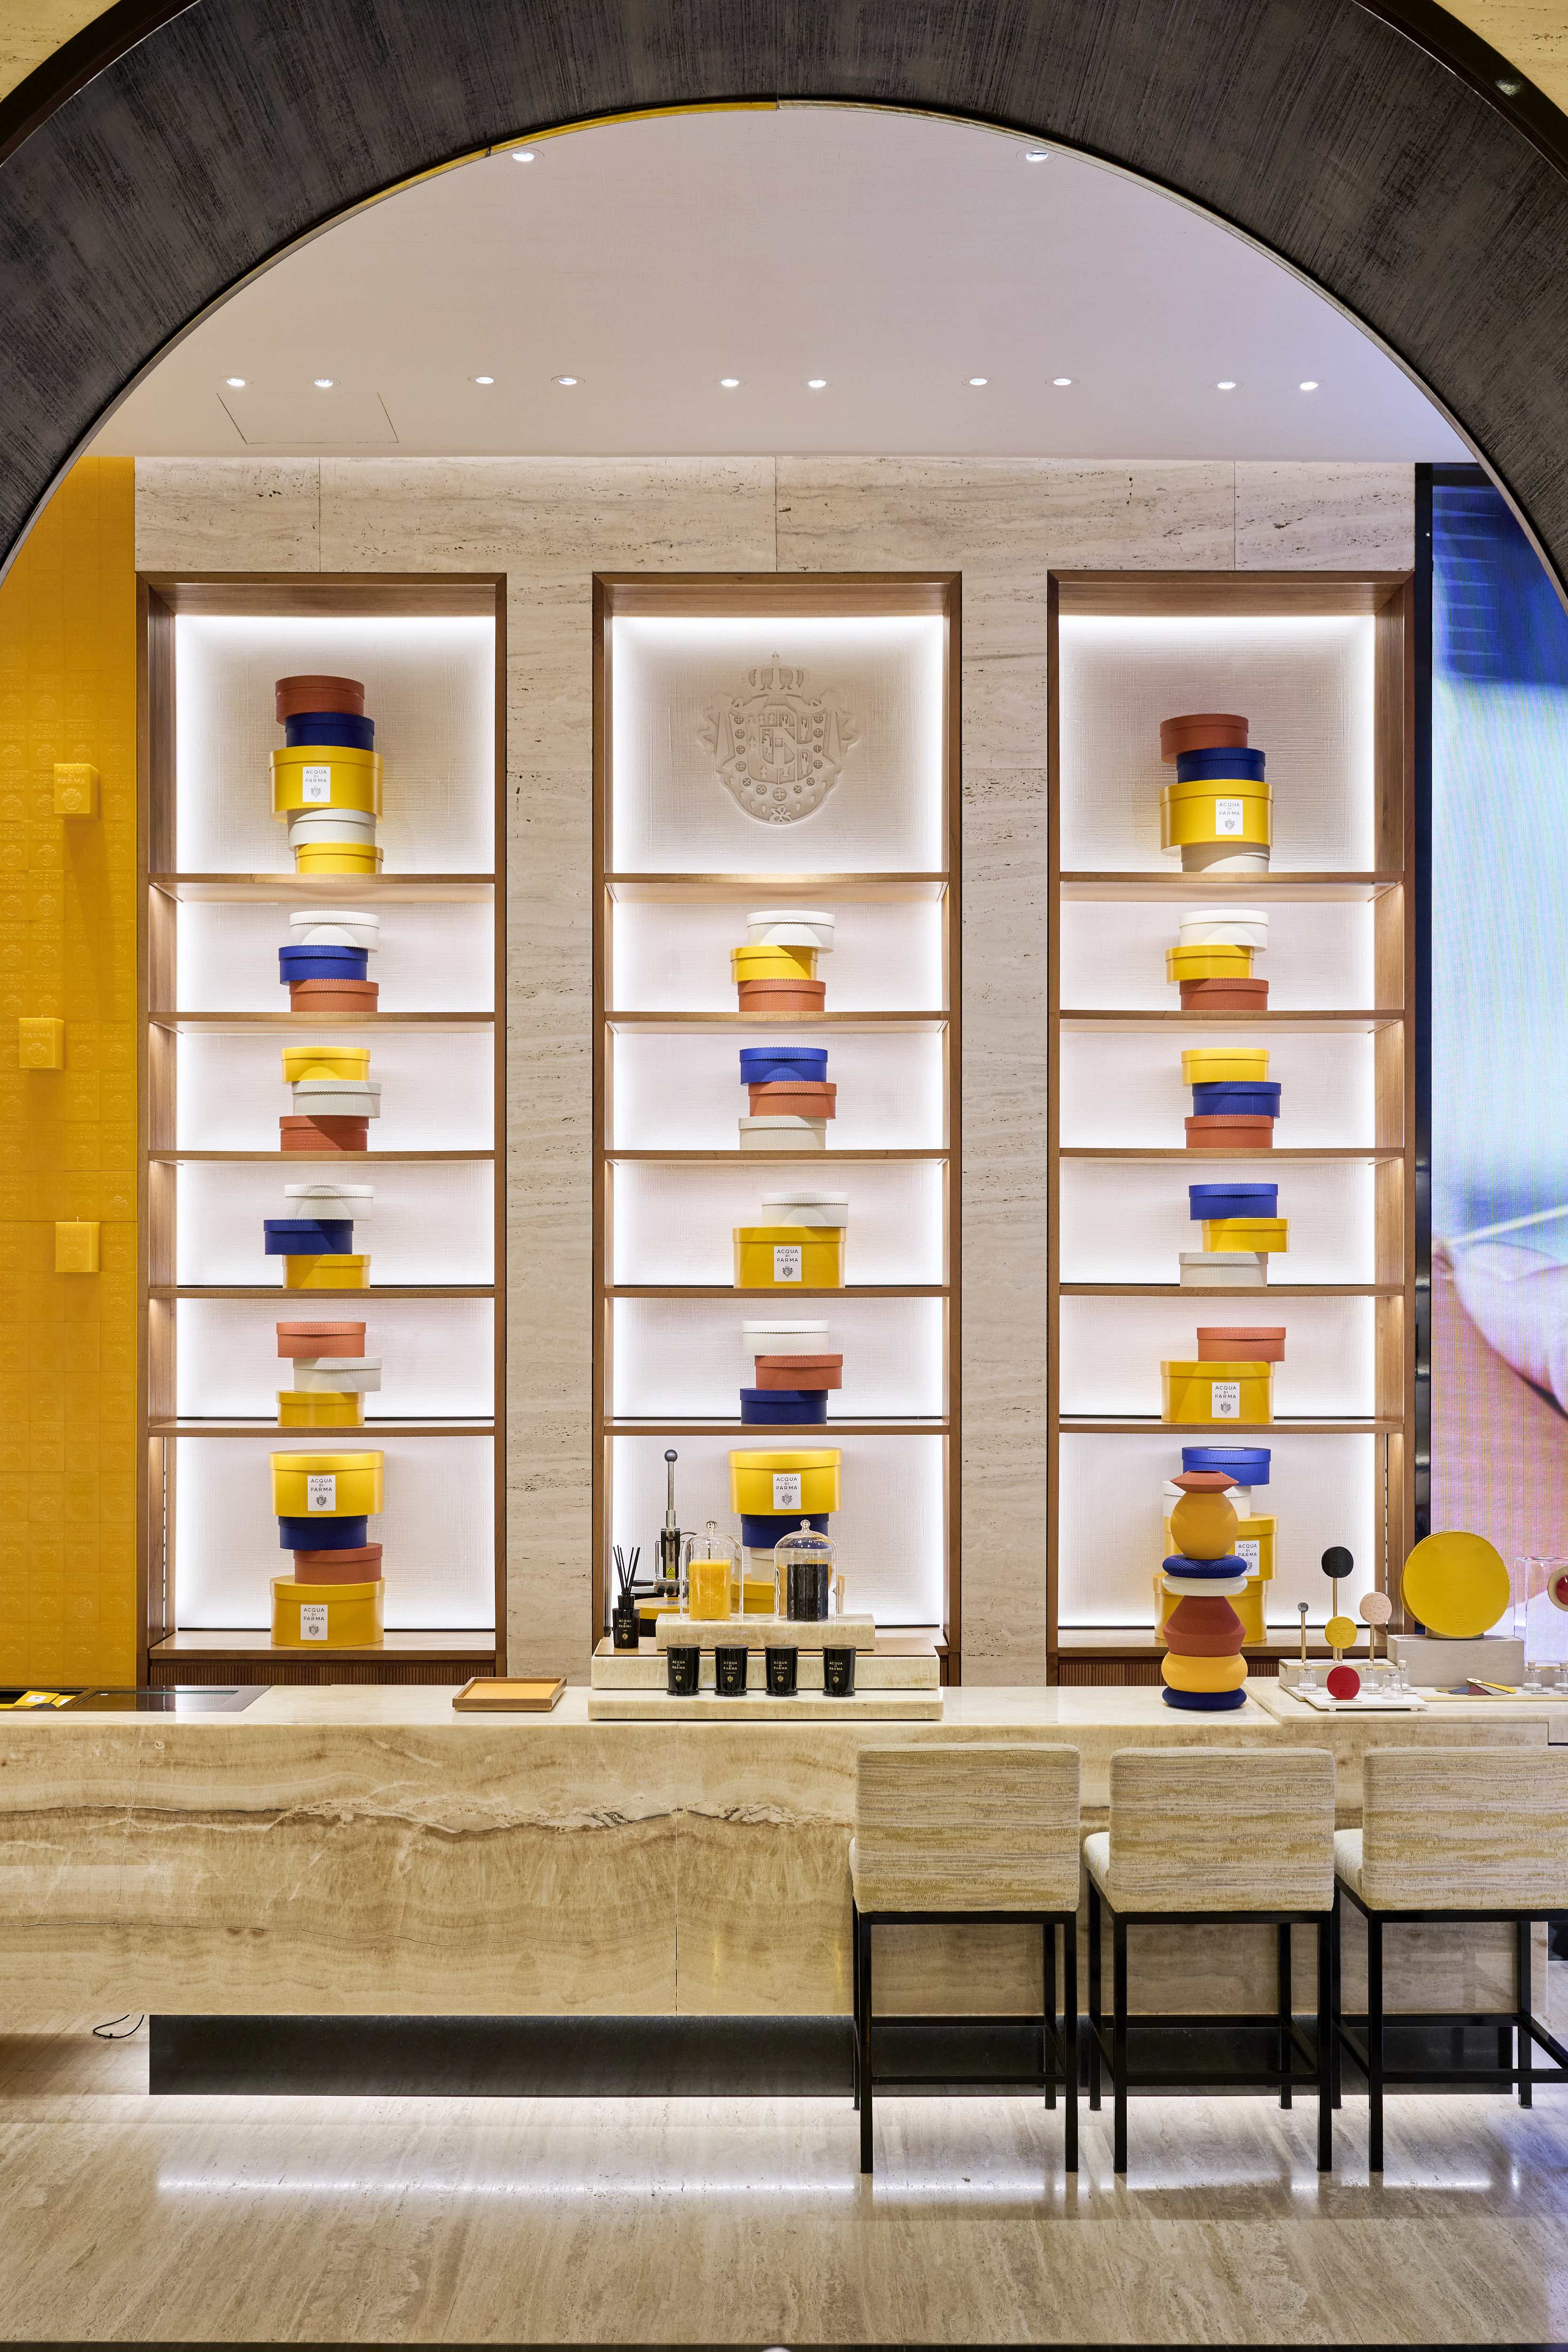 Colourful installation at Acqua di Parma store in Milan for new fragrance Mandarino di Sicilia